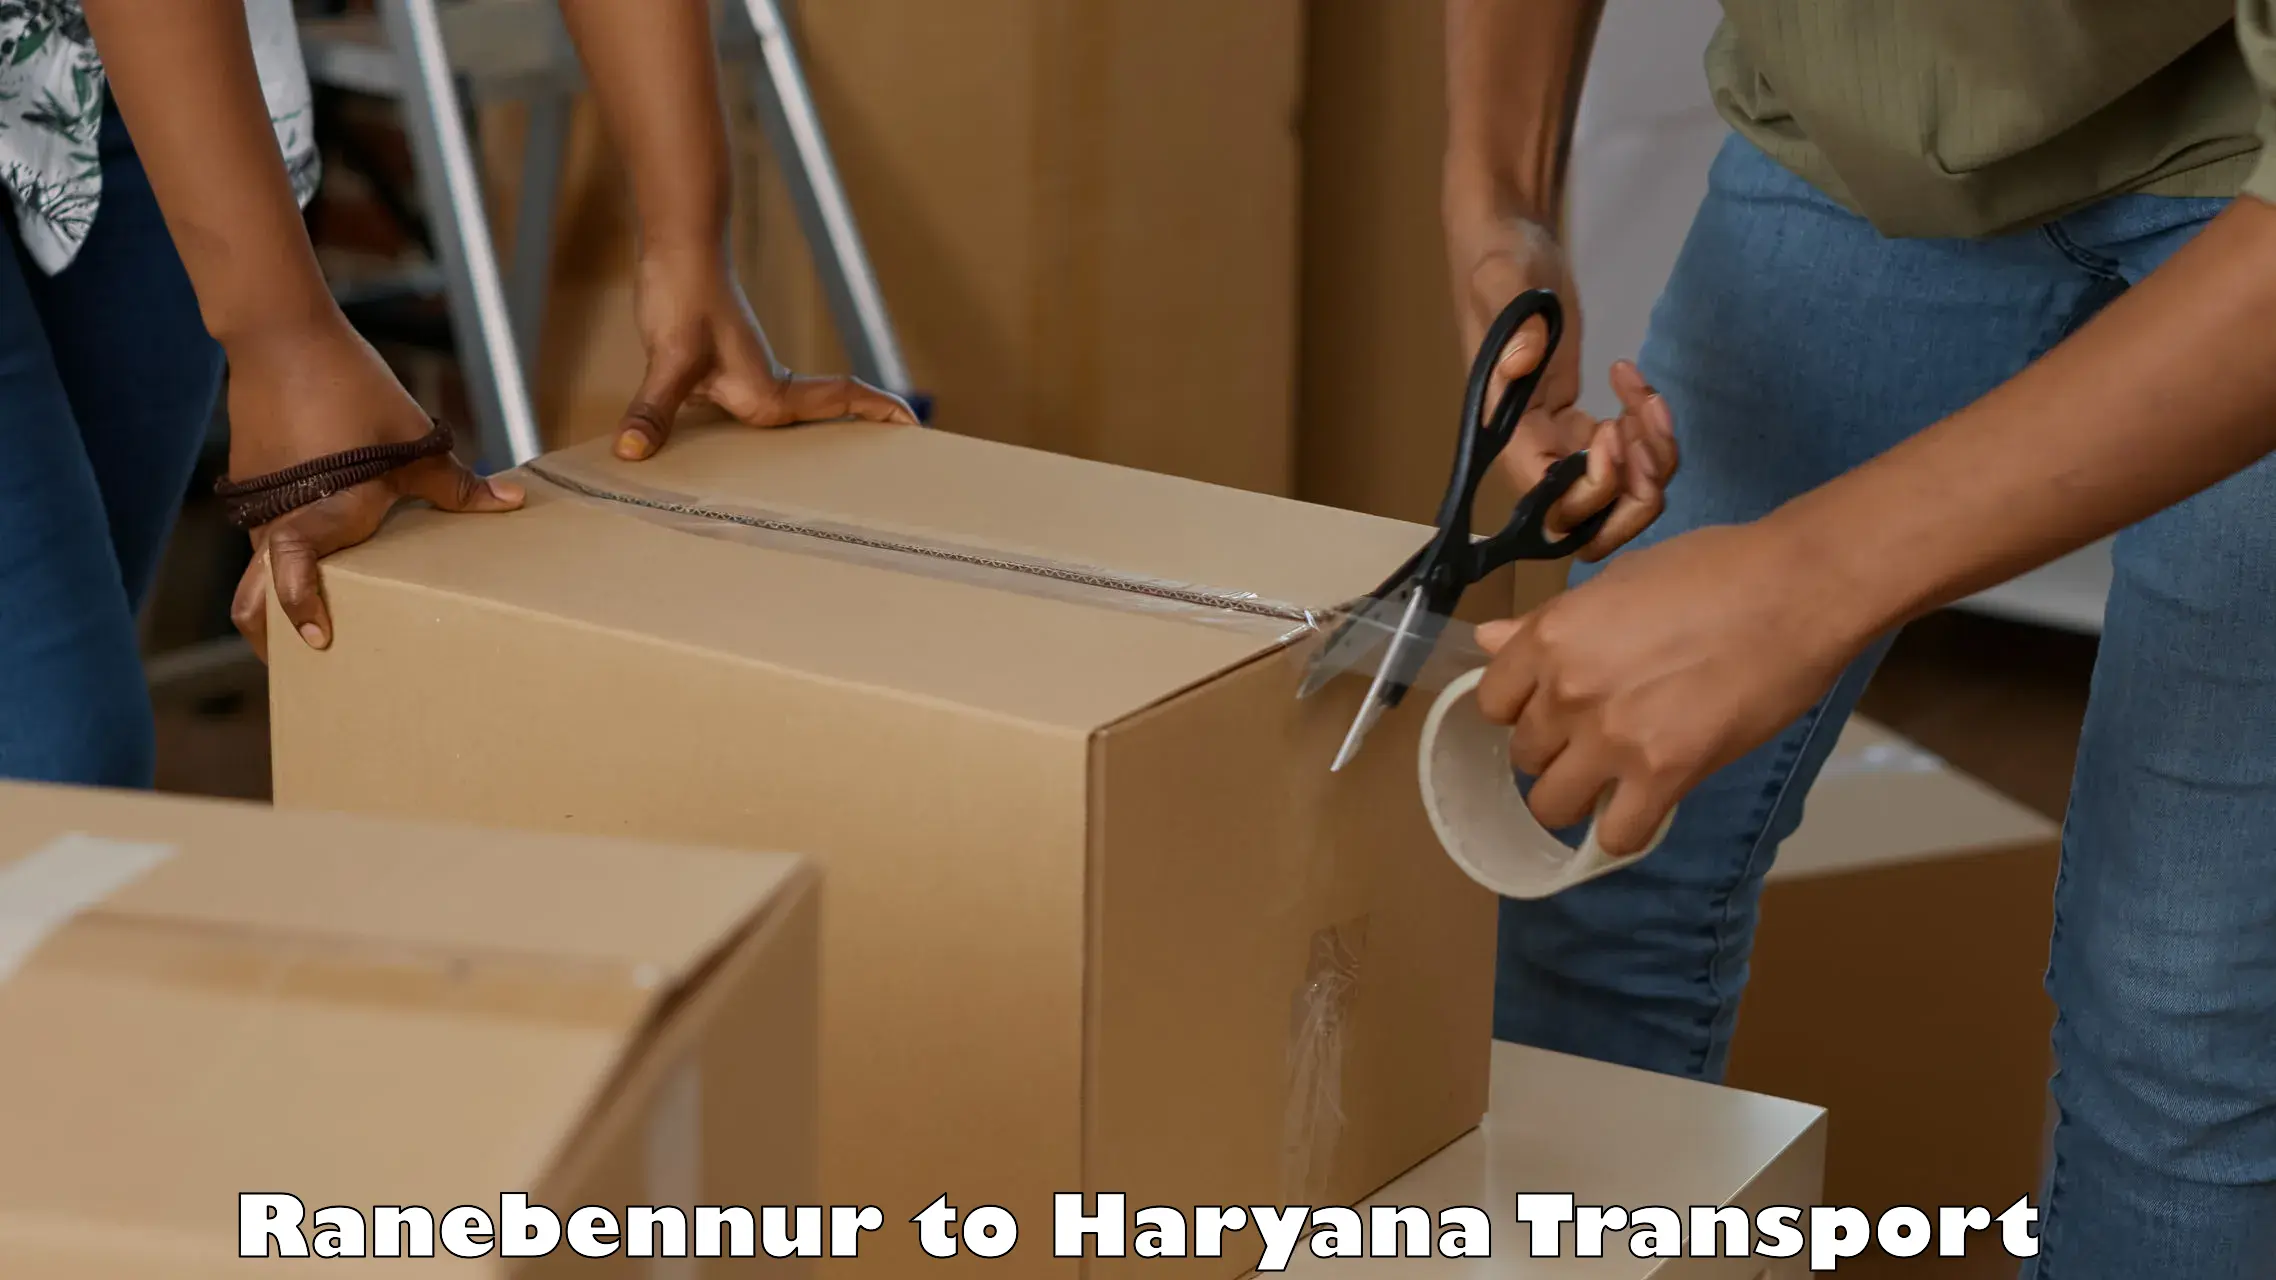 Online transport service Ranebennur to Haryana